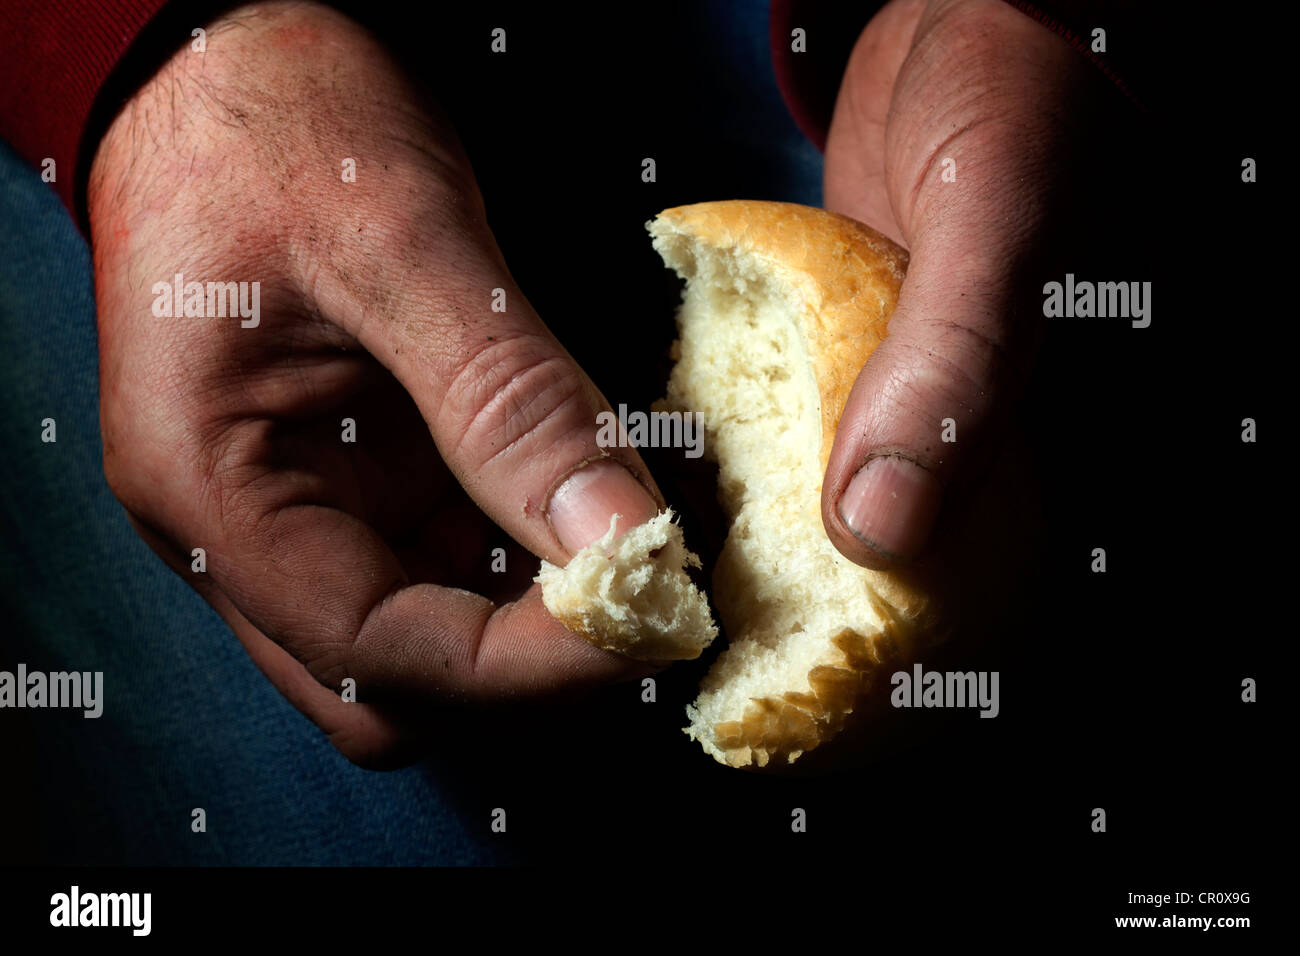 La povertà, la fame e la miseria in ultimo il pane in mano il concetto della fame Foto Stock